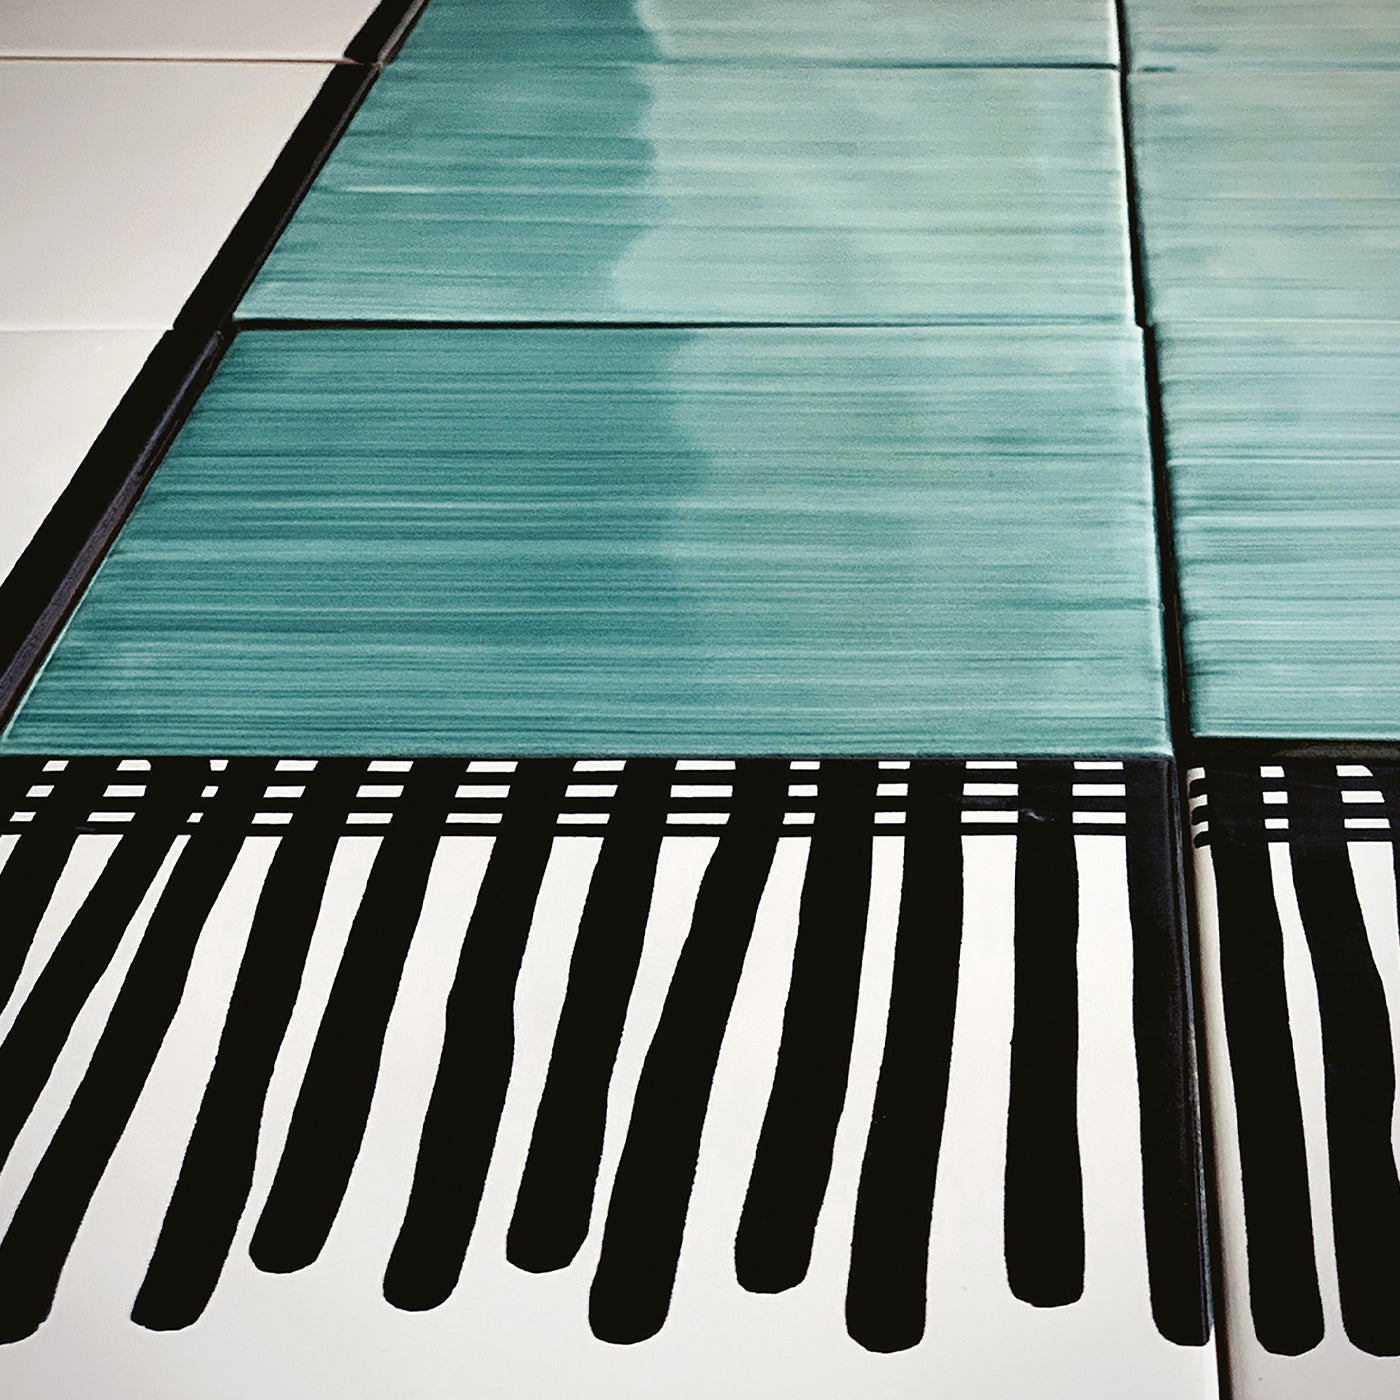 Carpet Green Ceramic Composition by Giuliano Andrea dell’Uva 200 x 100 - Alternative view 2